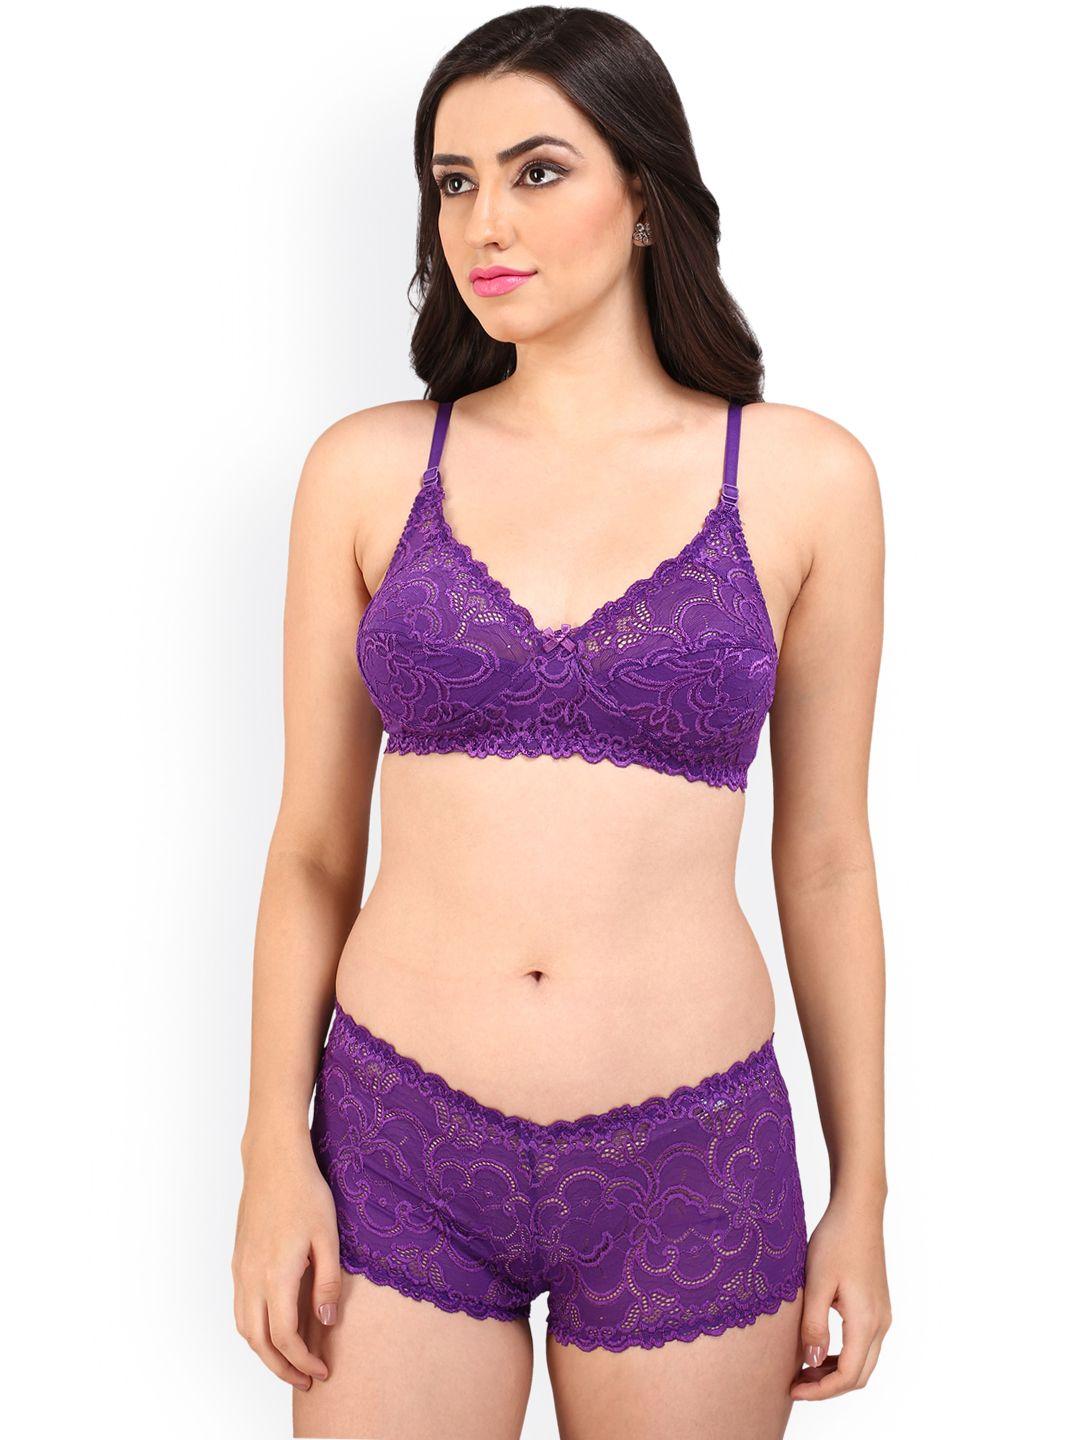 bralux women purple lace padded lingerie set